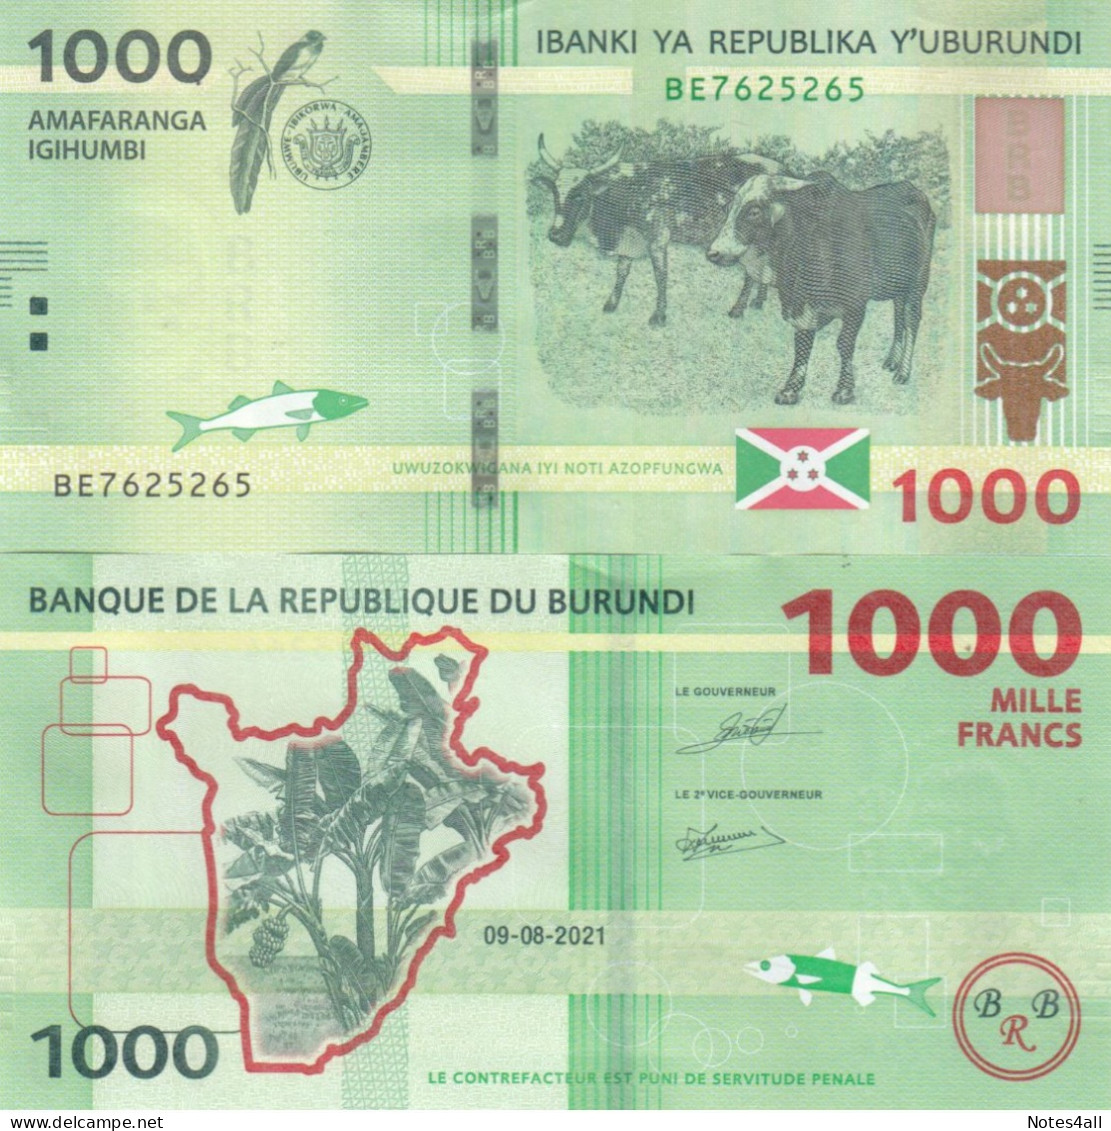 BURUNDI 1000 FRANCS 2021 P 51 UNC - Burundi